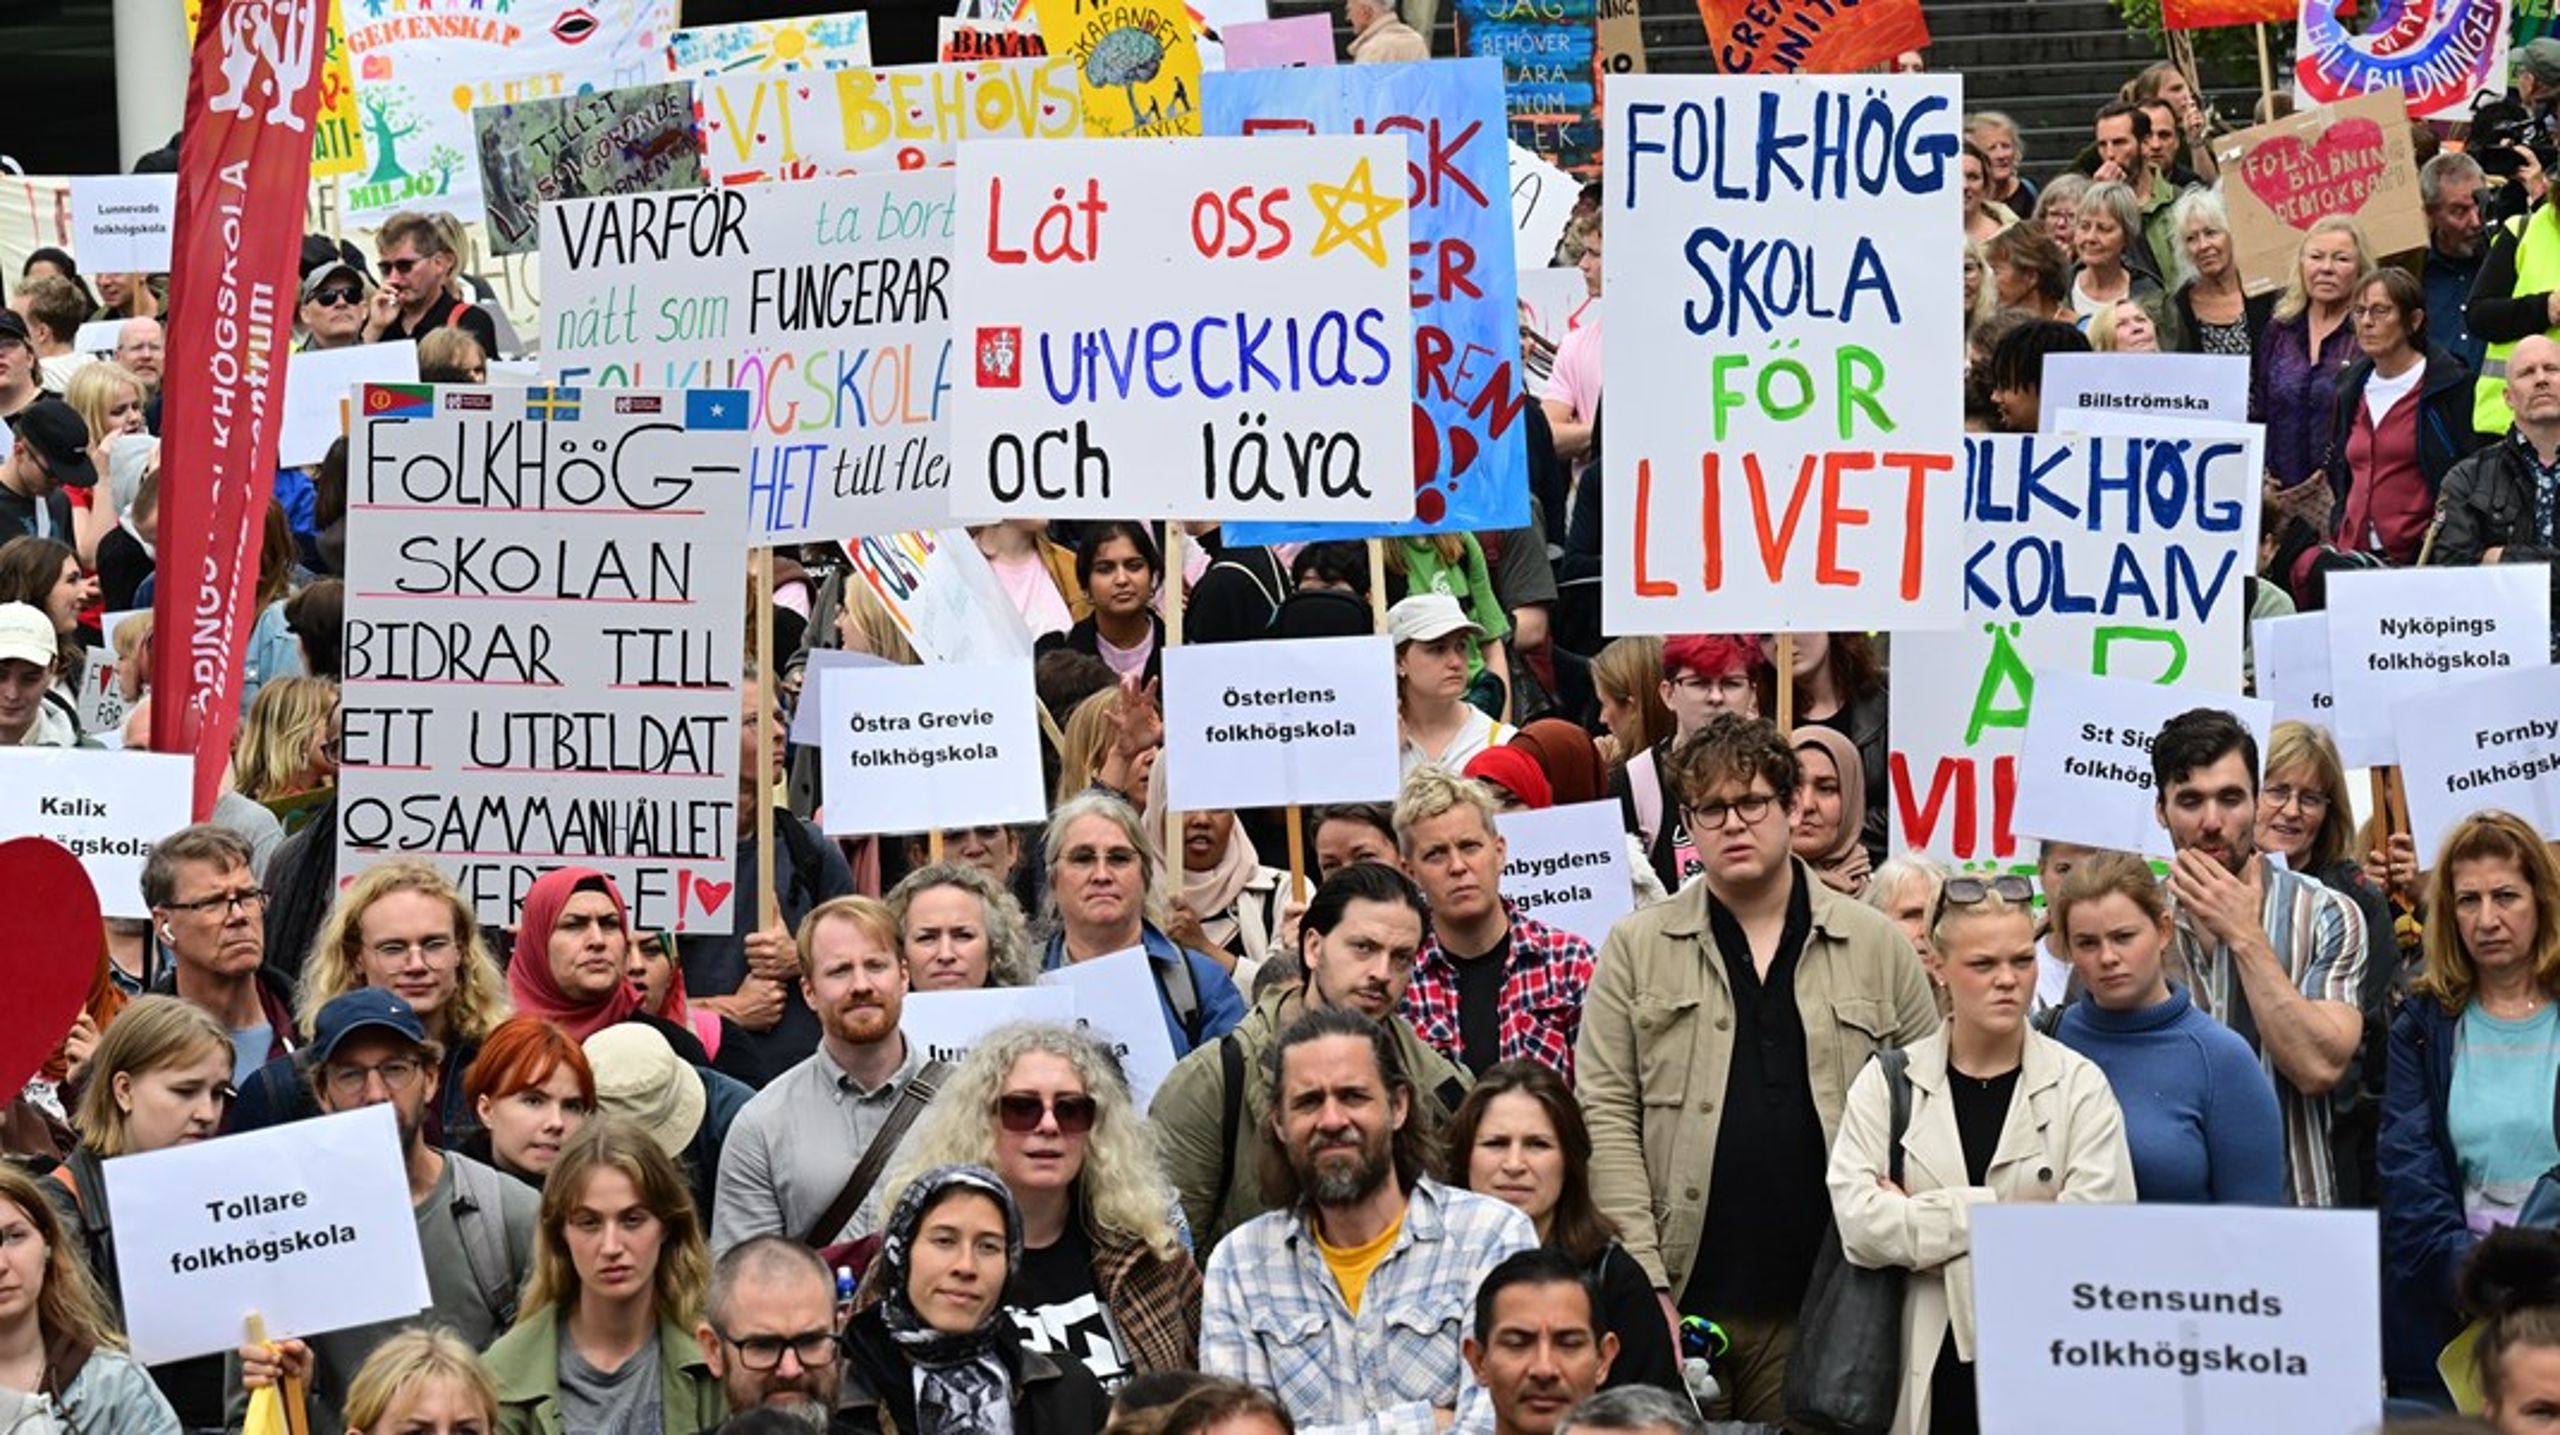 Sveriges lärare folkhögskola arrangerade i höstas en nationell manifestation för folkhögskolan på Sergels Torg i Stockholm. <br>